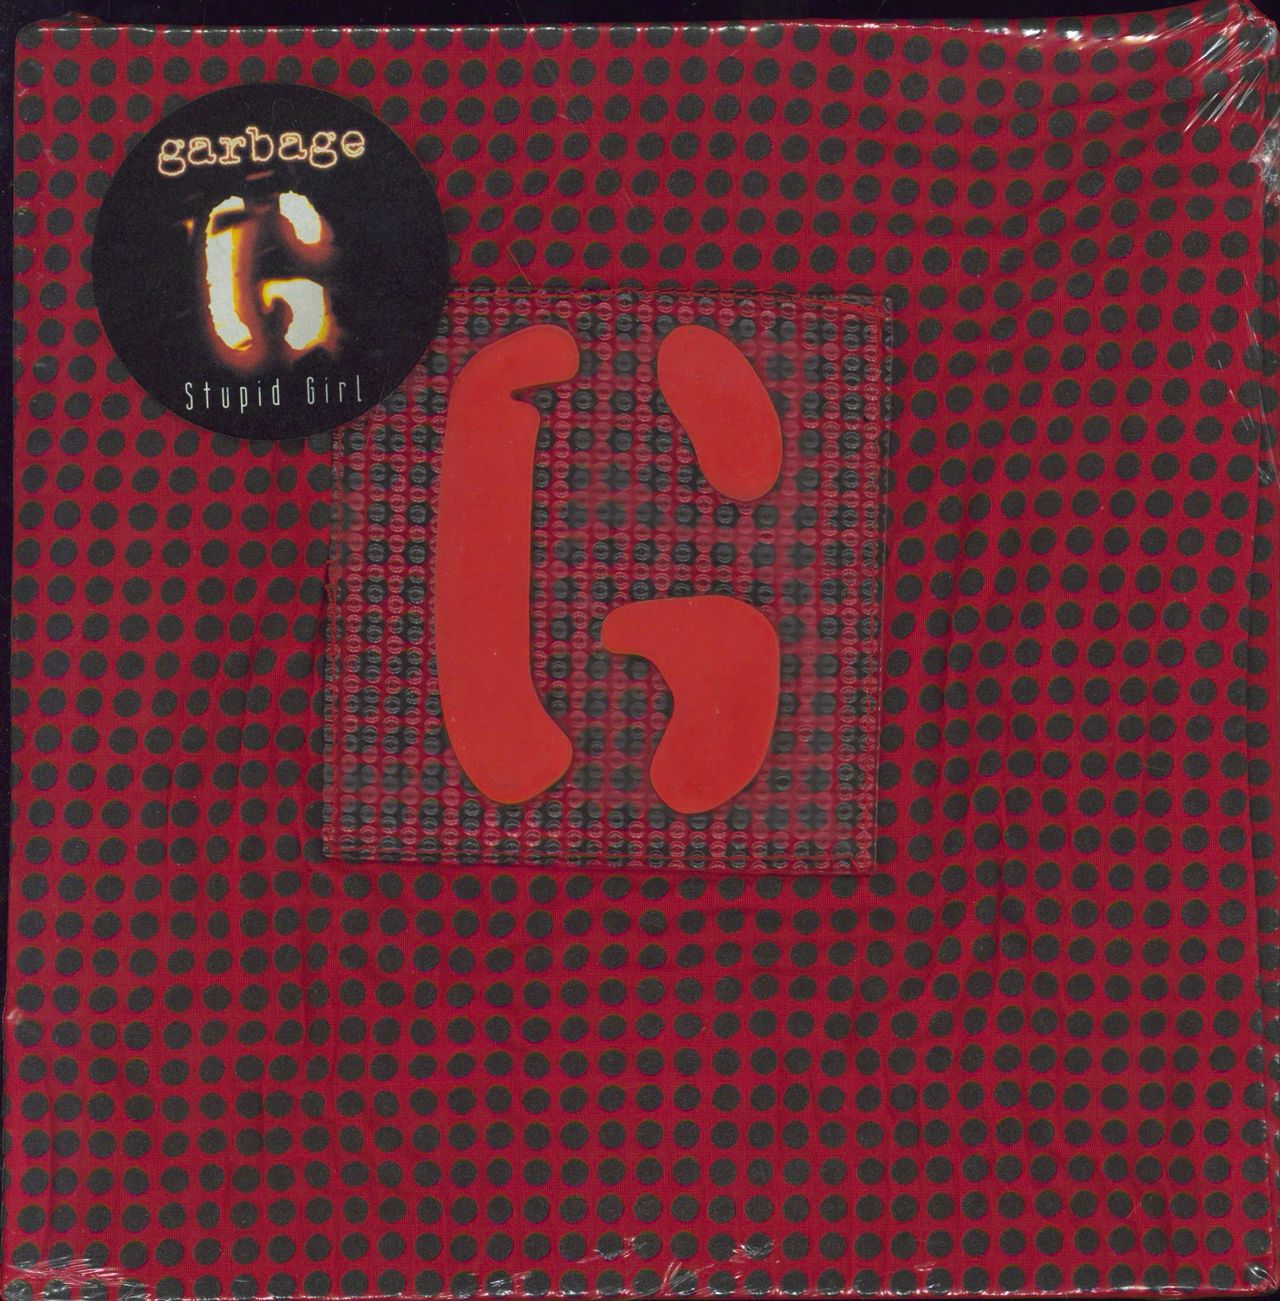 Garbage Stupid Girl - Red Fabric Sleeve - Sealed UK 7